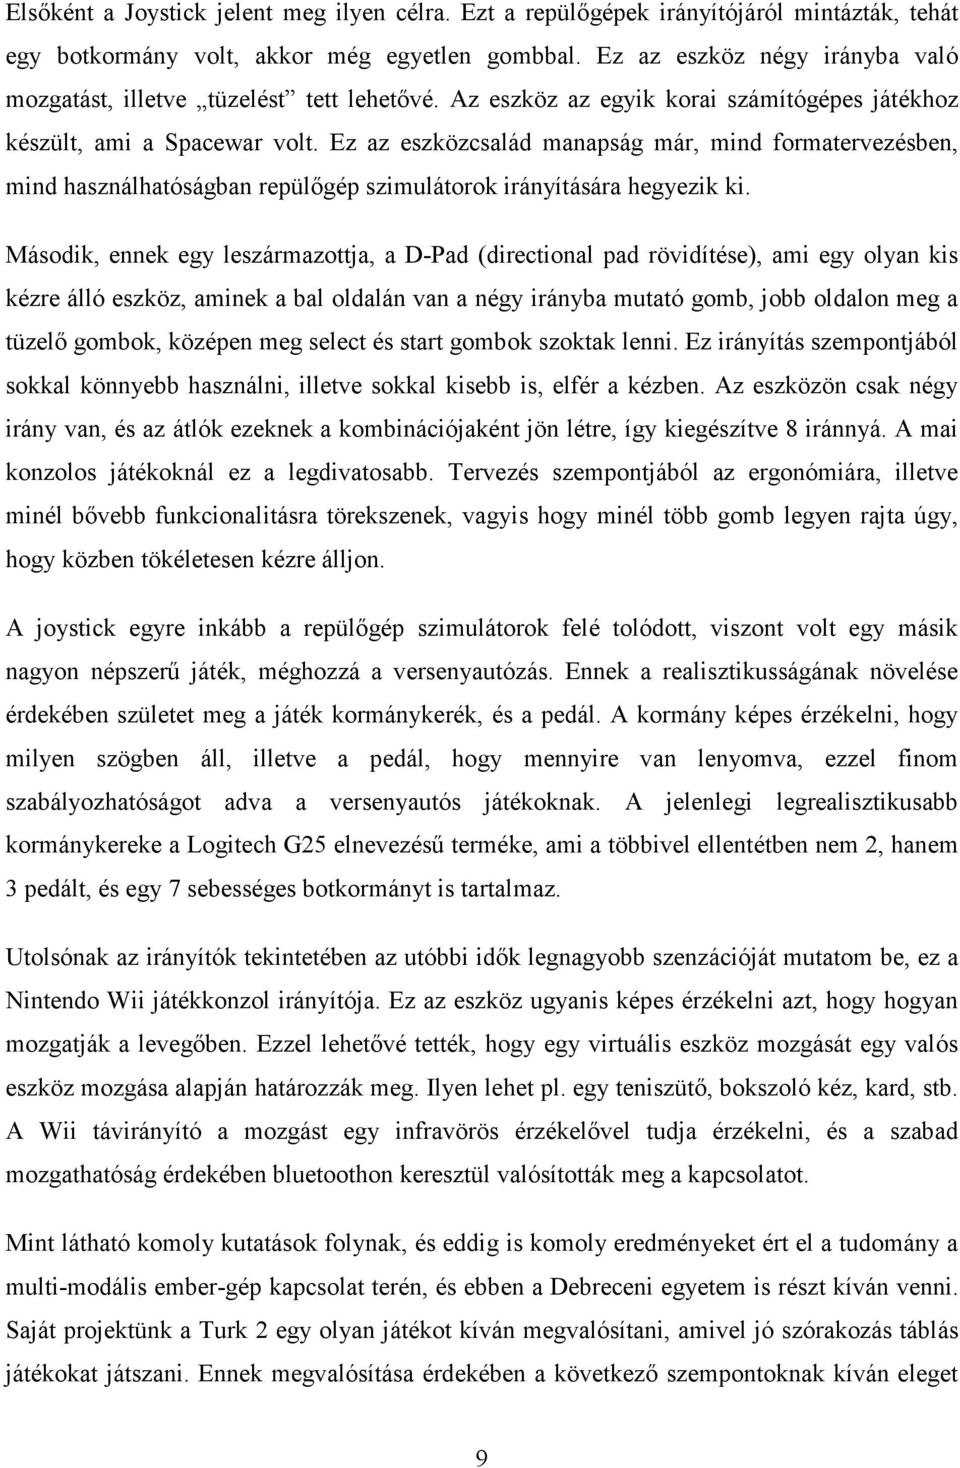 Debreceni Egyetem Informatika Kar. Multi-modális ember-gép kapcsolat  digitális képfeldolgozási aspektusa - PDF Ingyenes letöltés